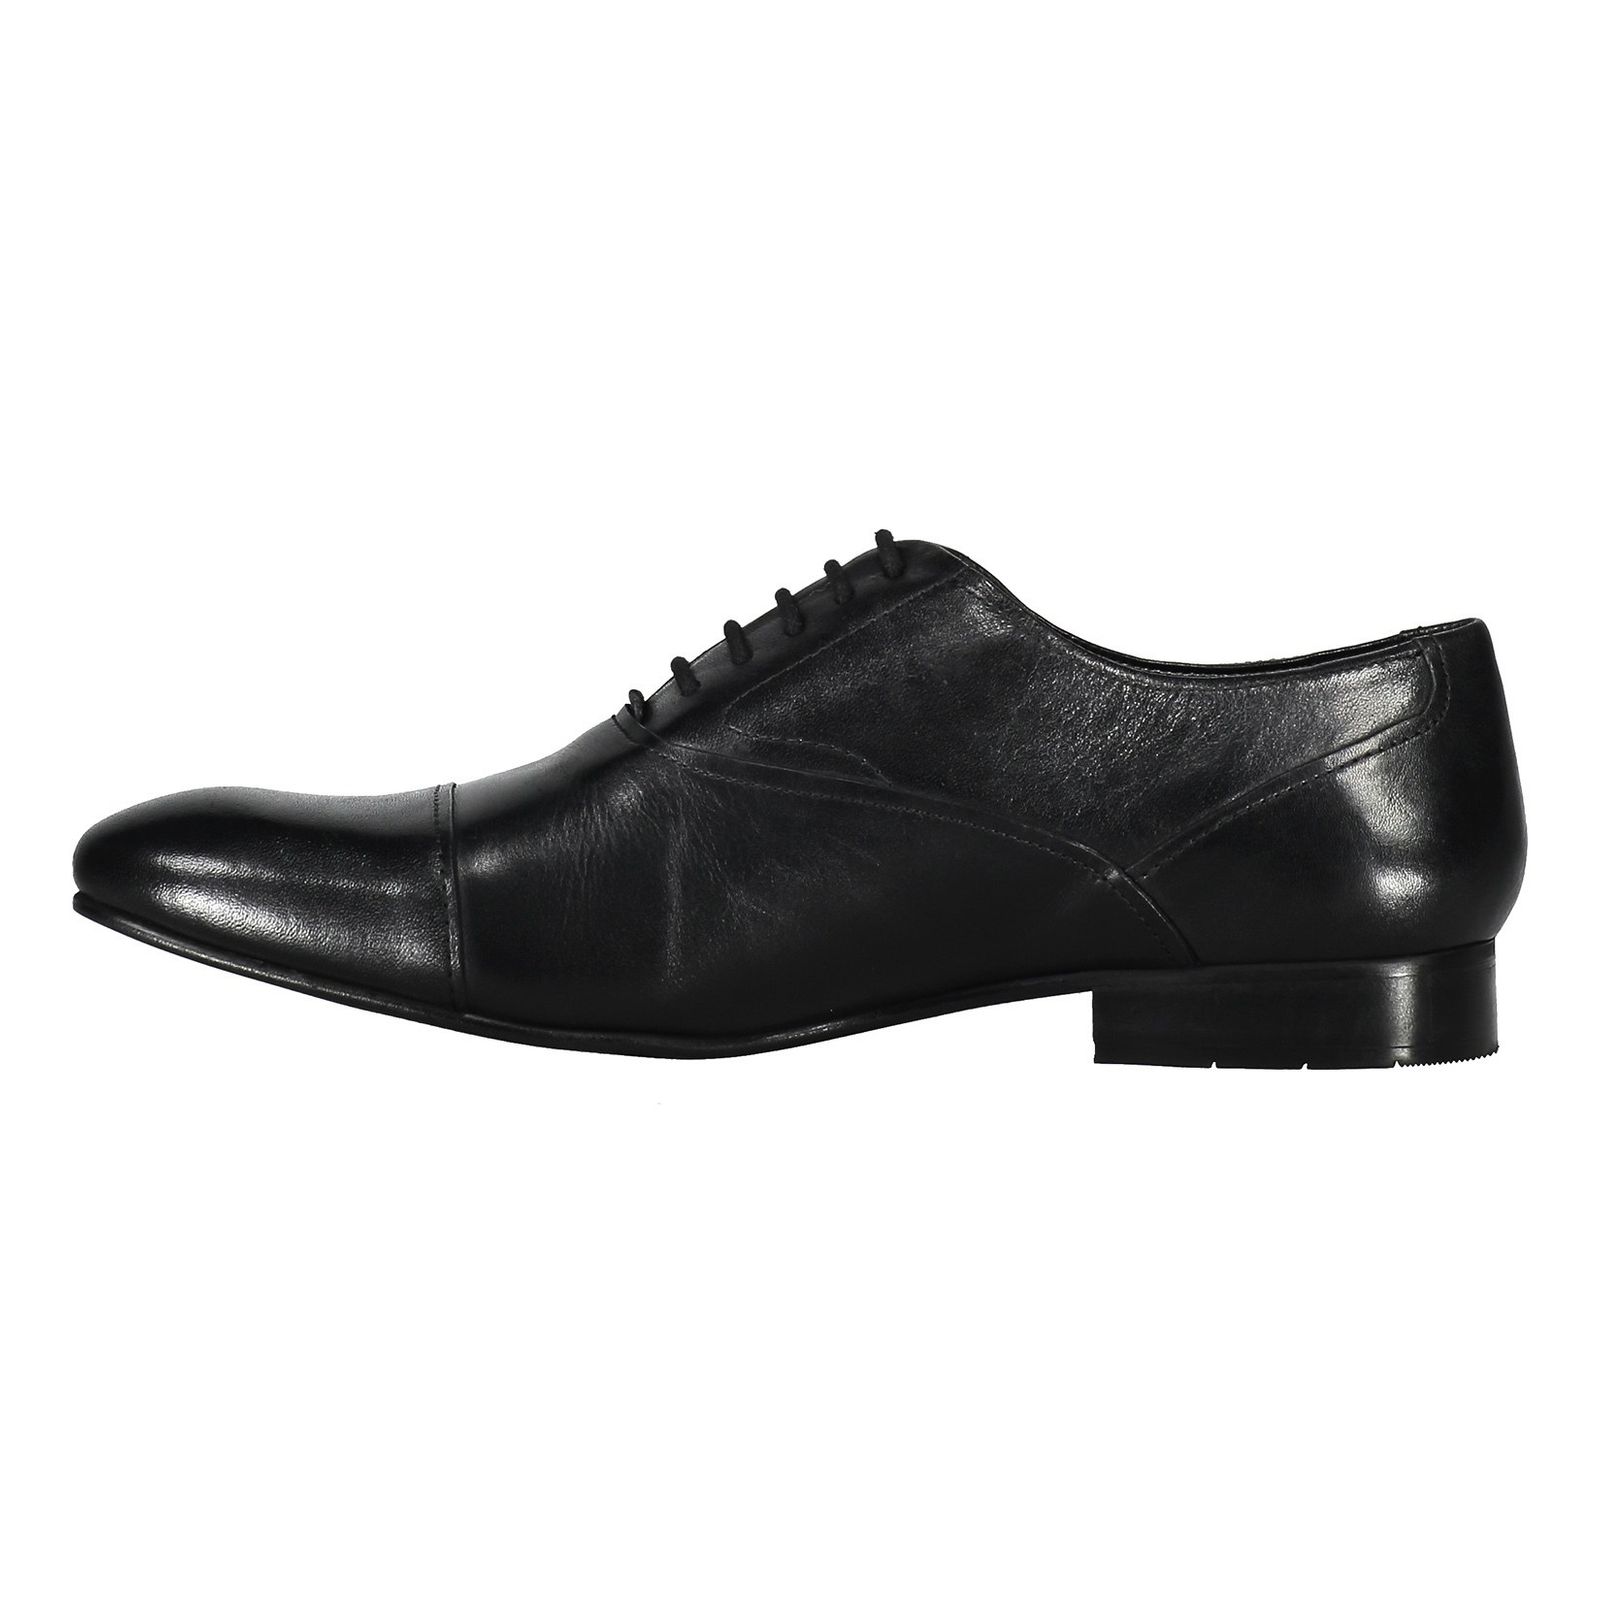 کفش رسمی چرم مردانه - کرت گایگر - مشکي - 4